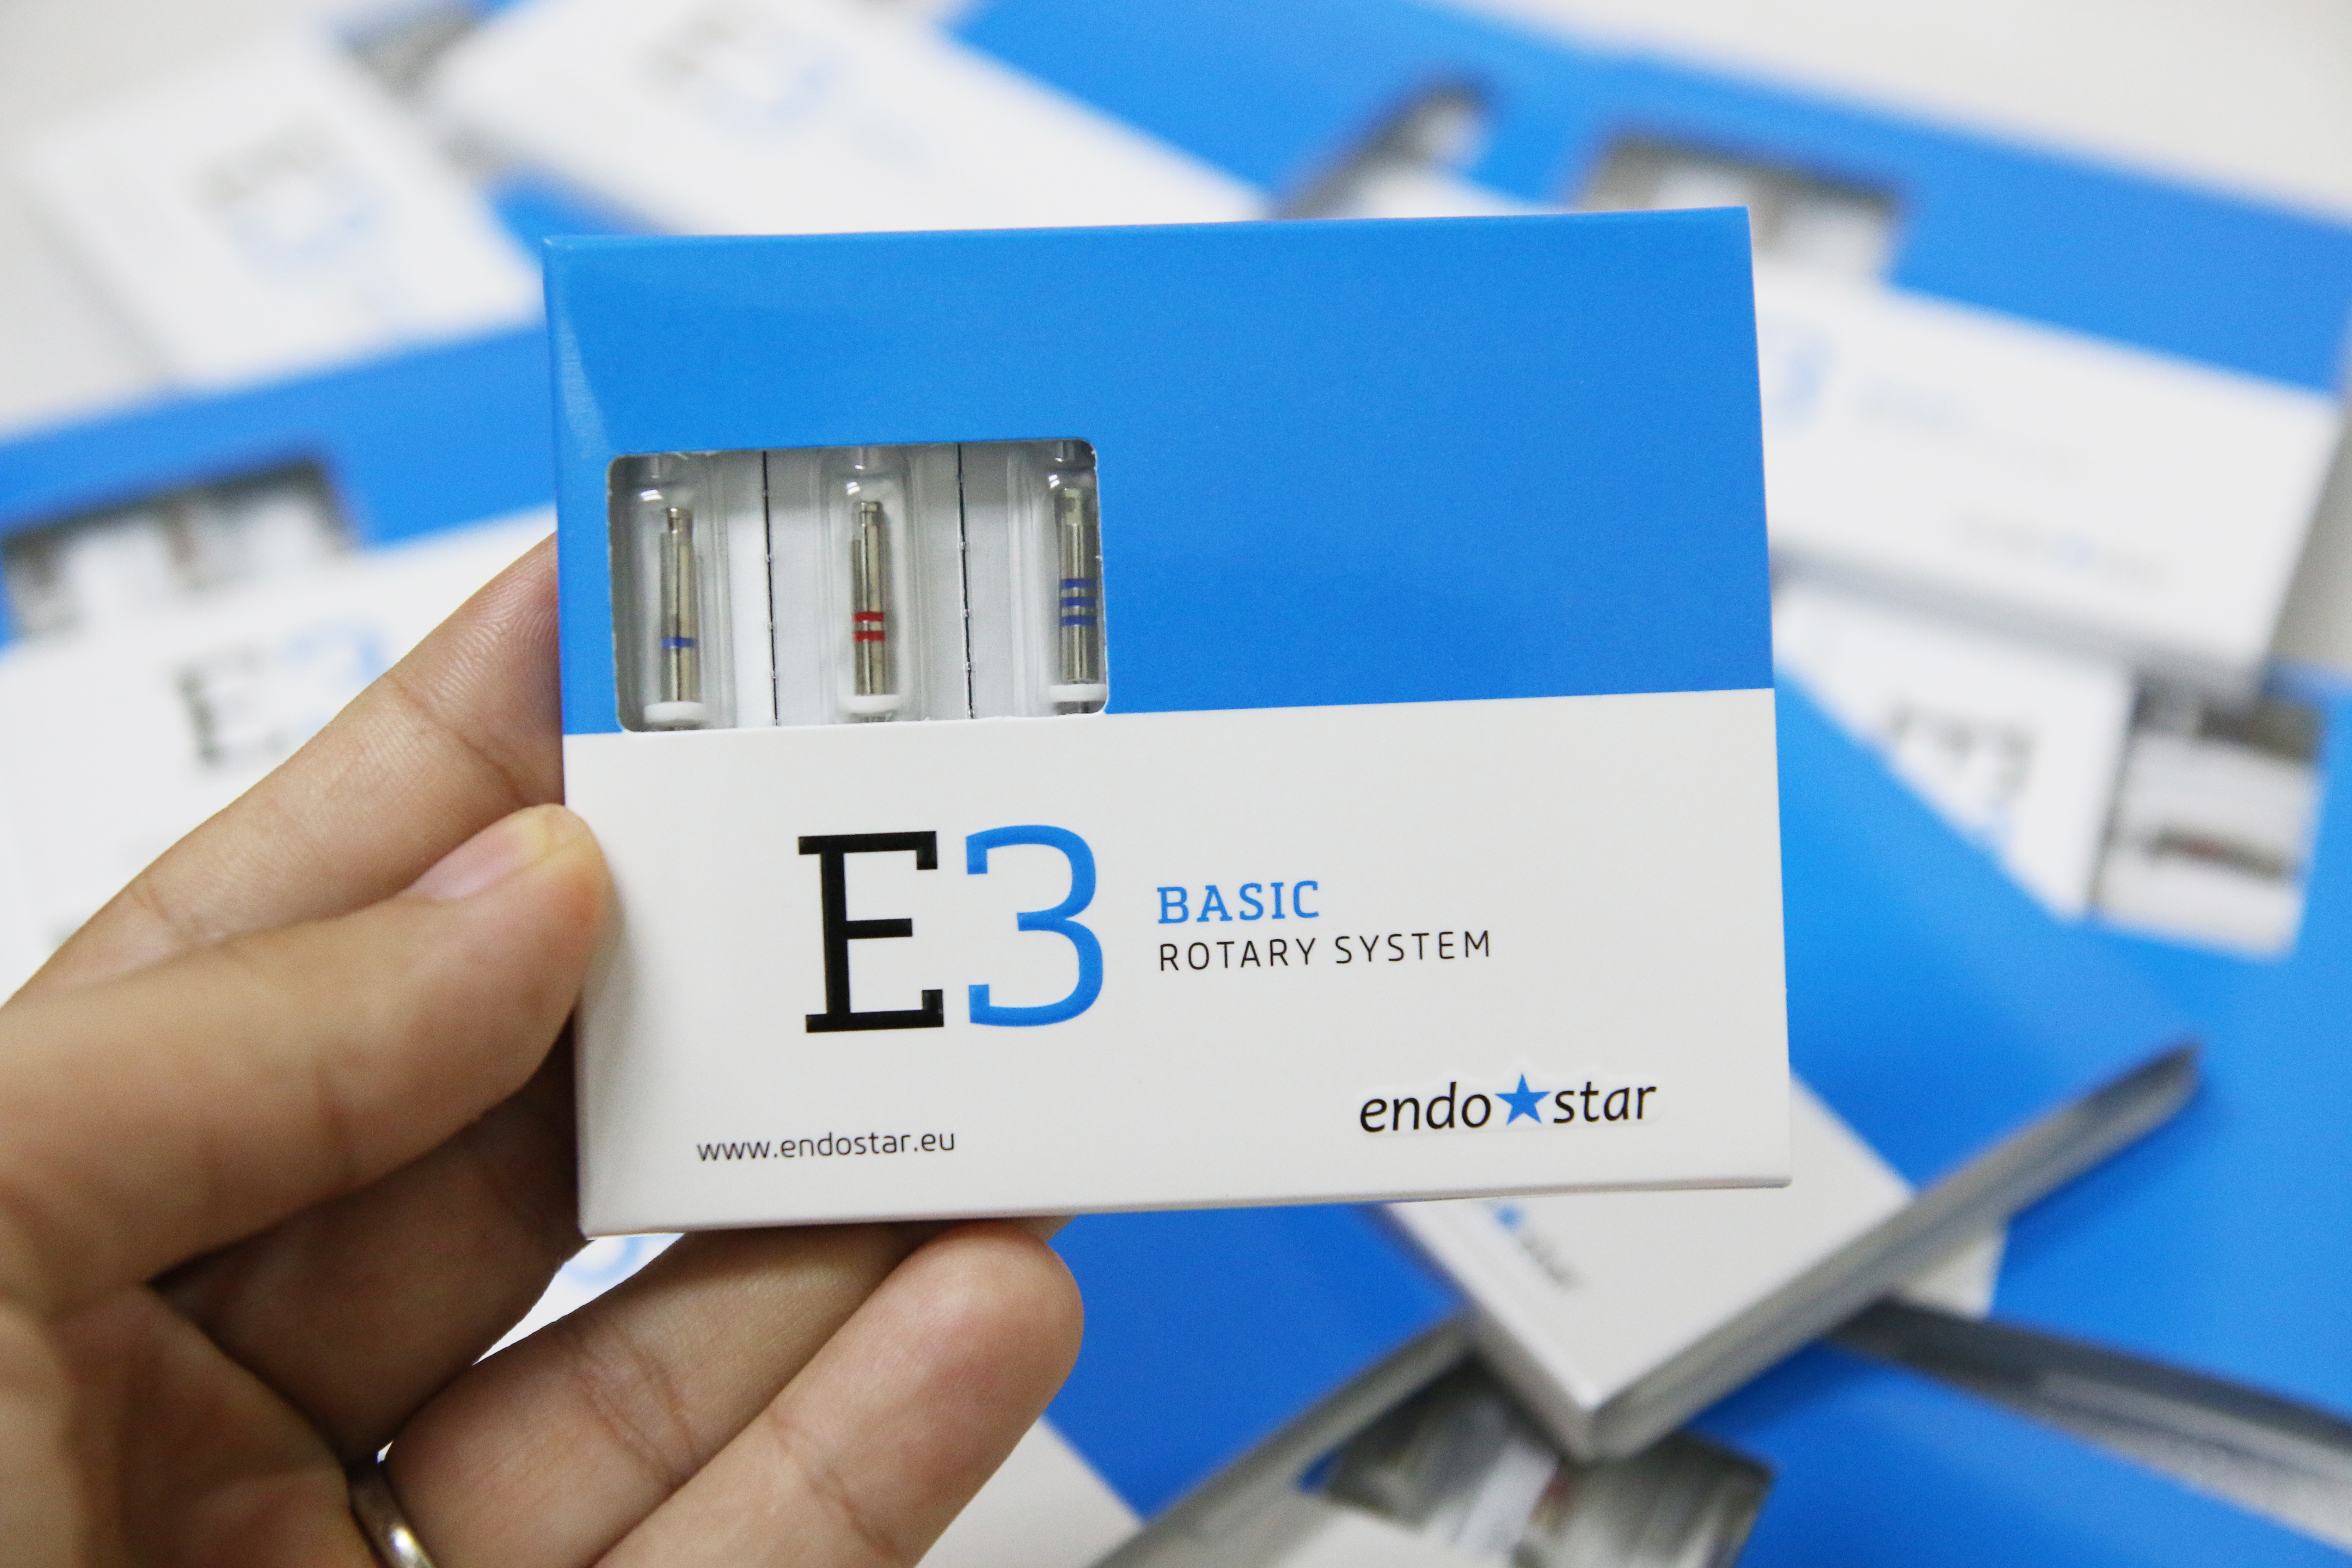 Trâm file nội nha từ châu Âu EndoStar E3- file đàn hồi - E3 Big-3 cây khác loại-35/04 (25mm), 40/04 (25mm), 45/04 (25mm)